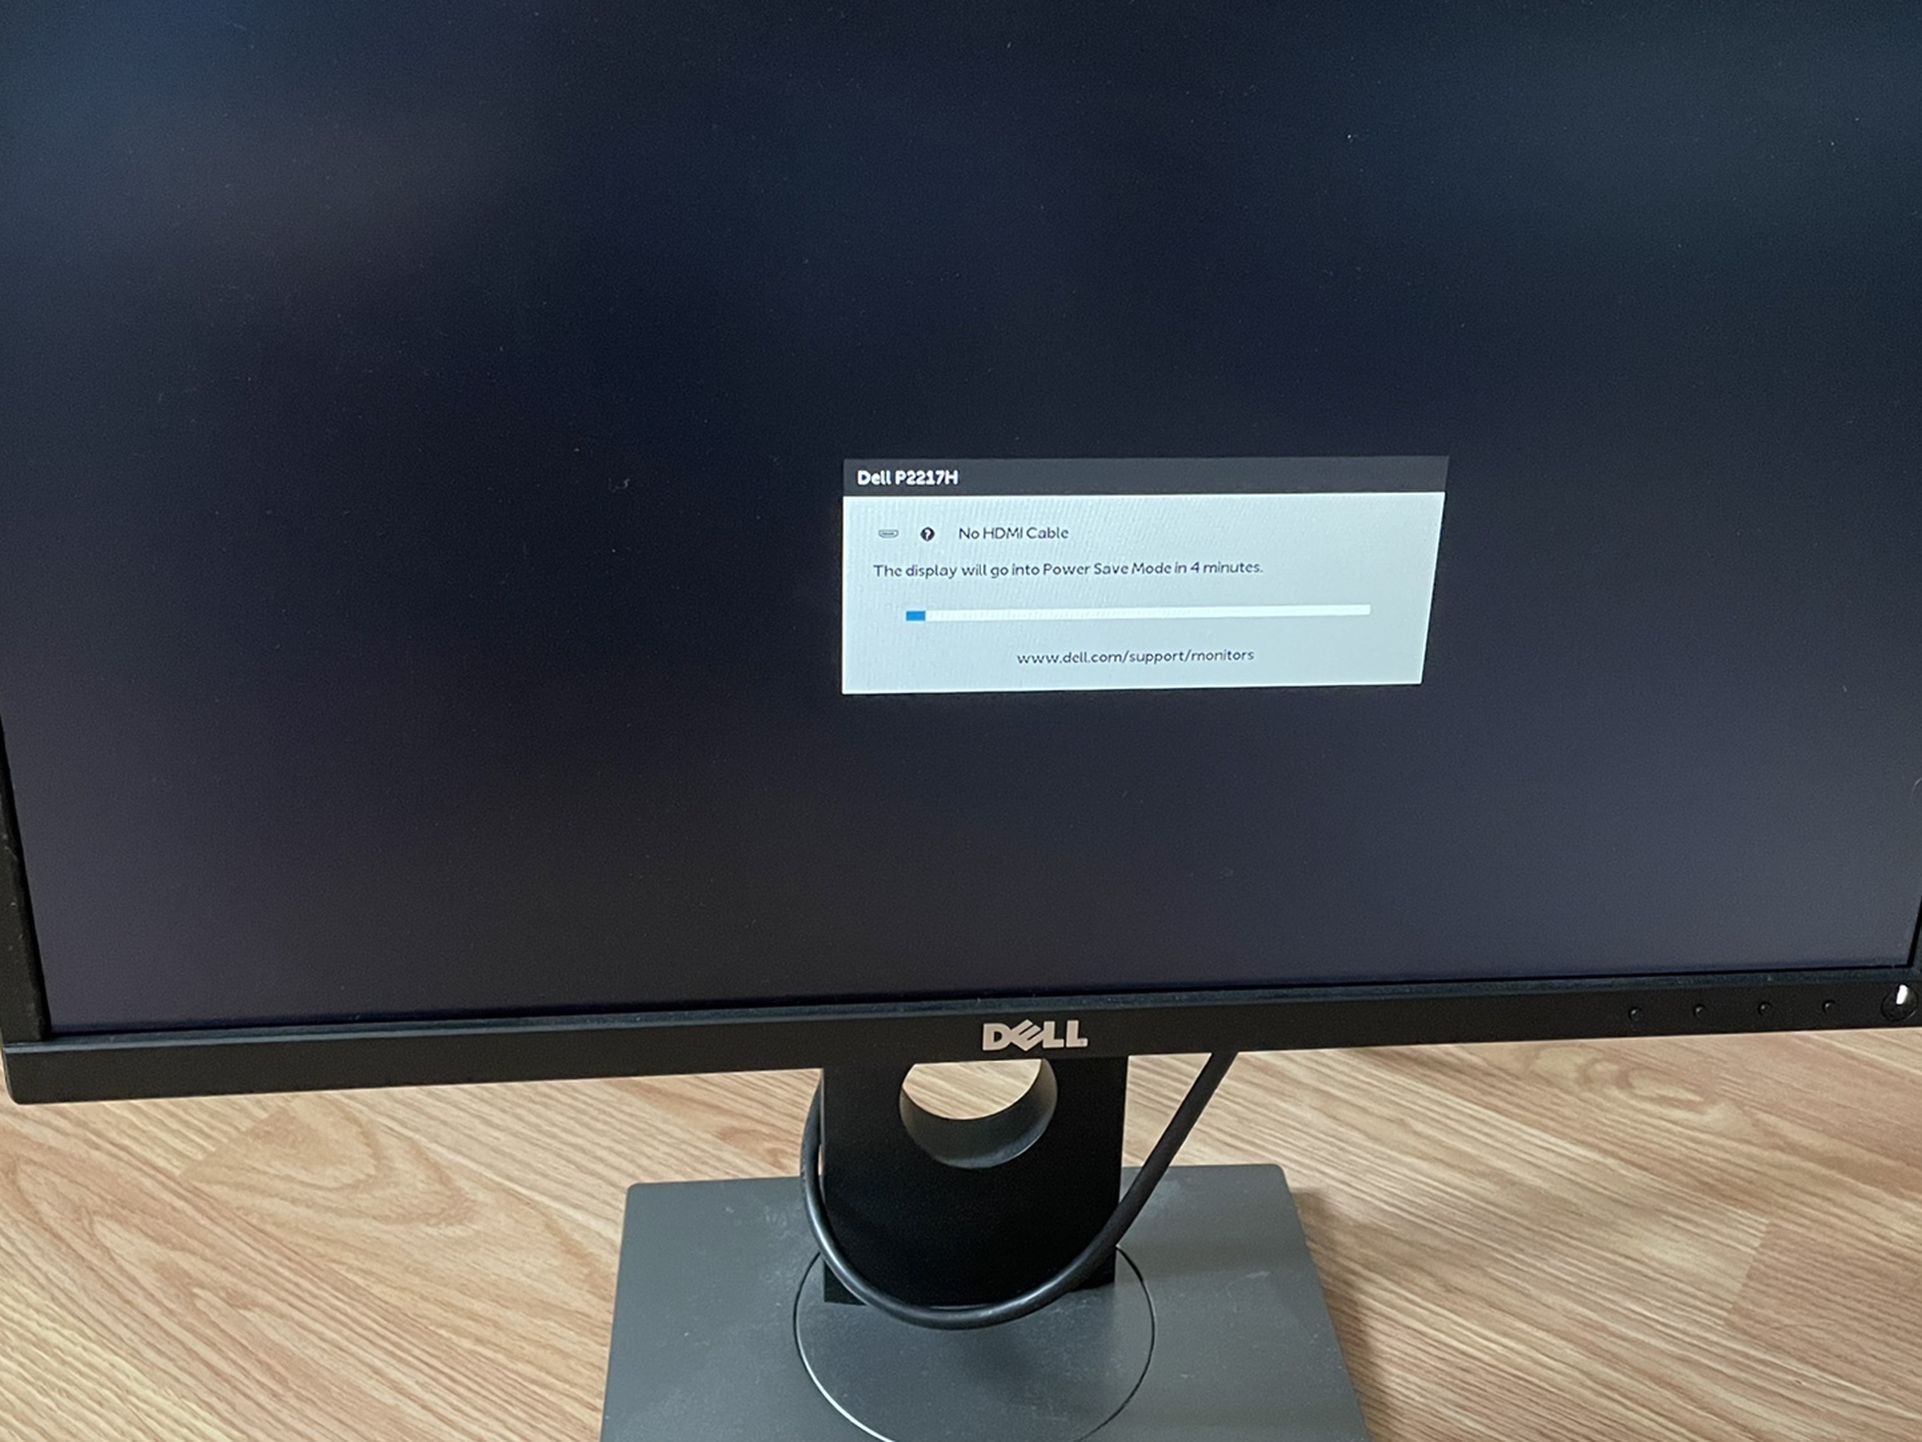 Dell P2217h 22” monitor